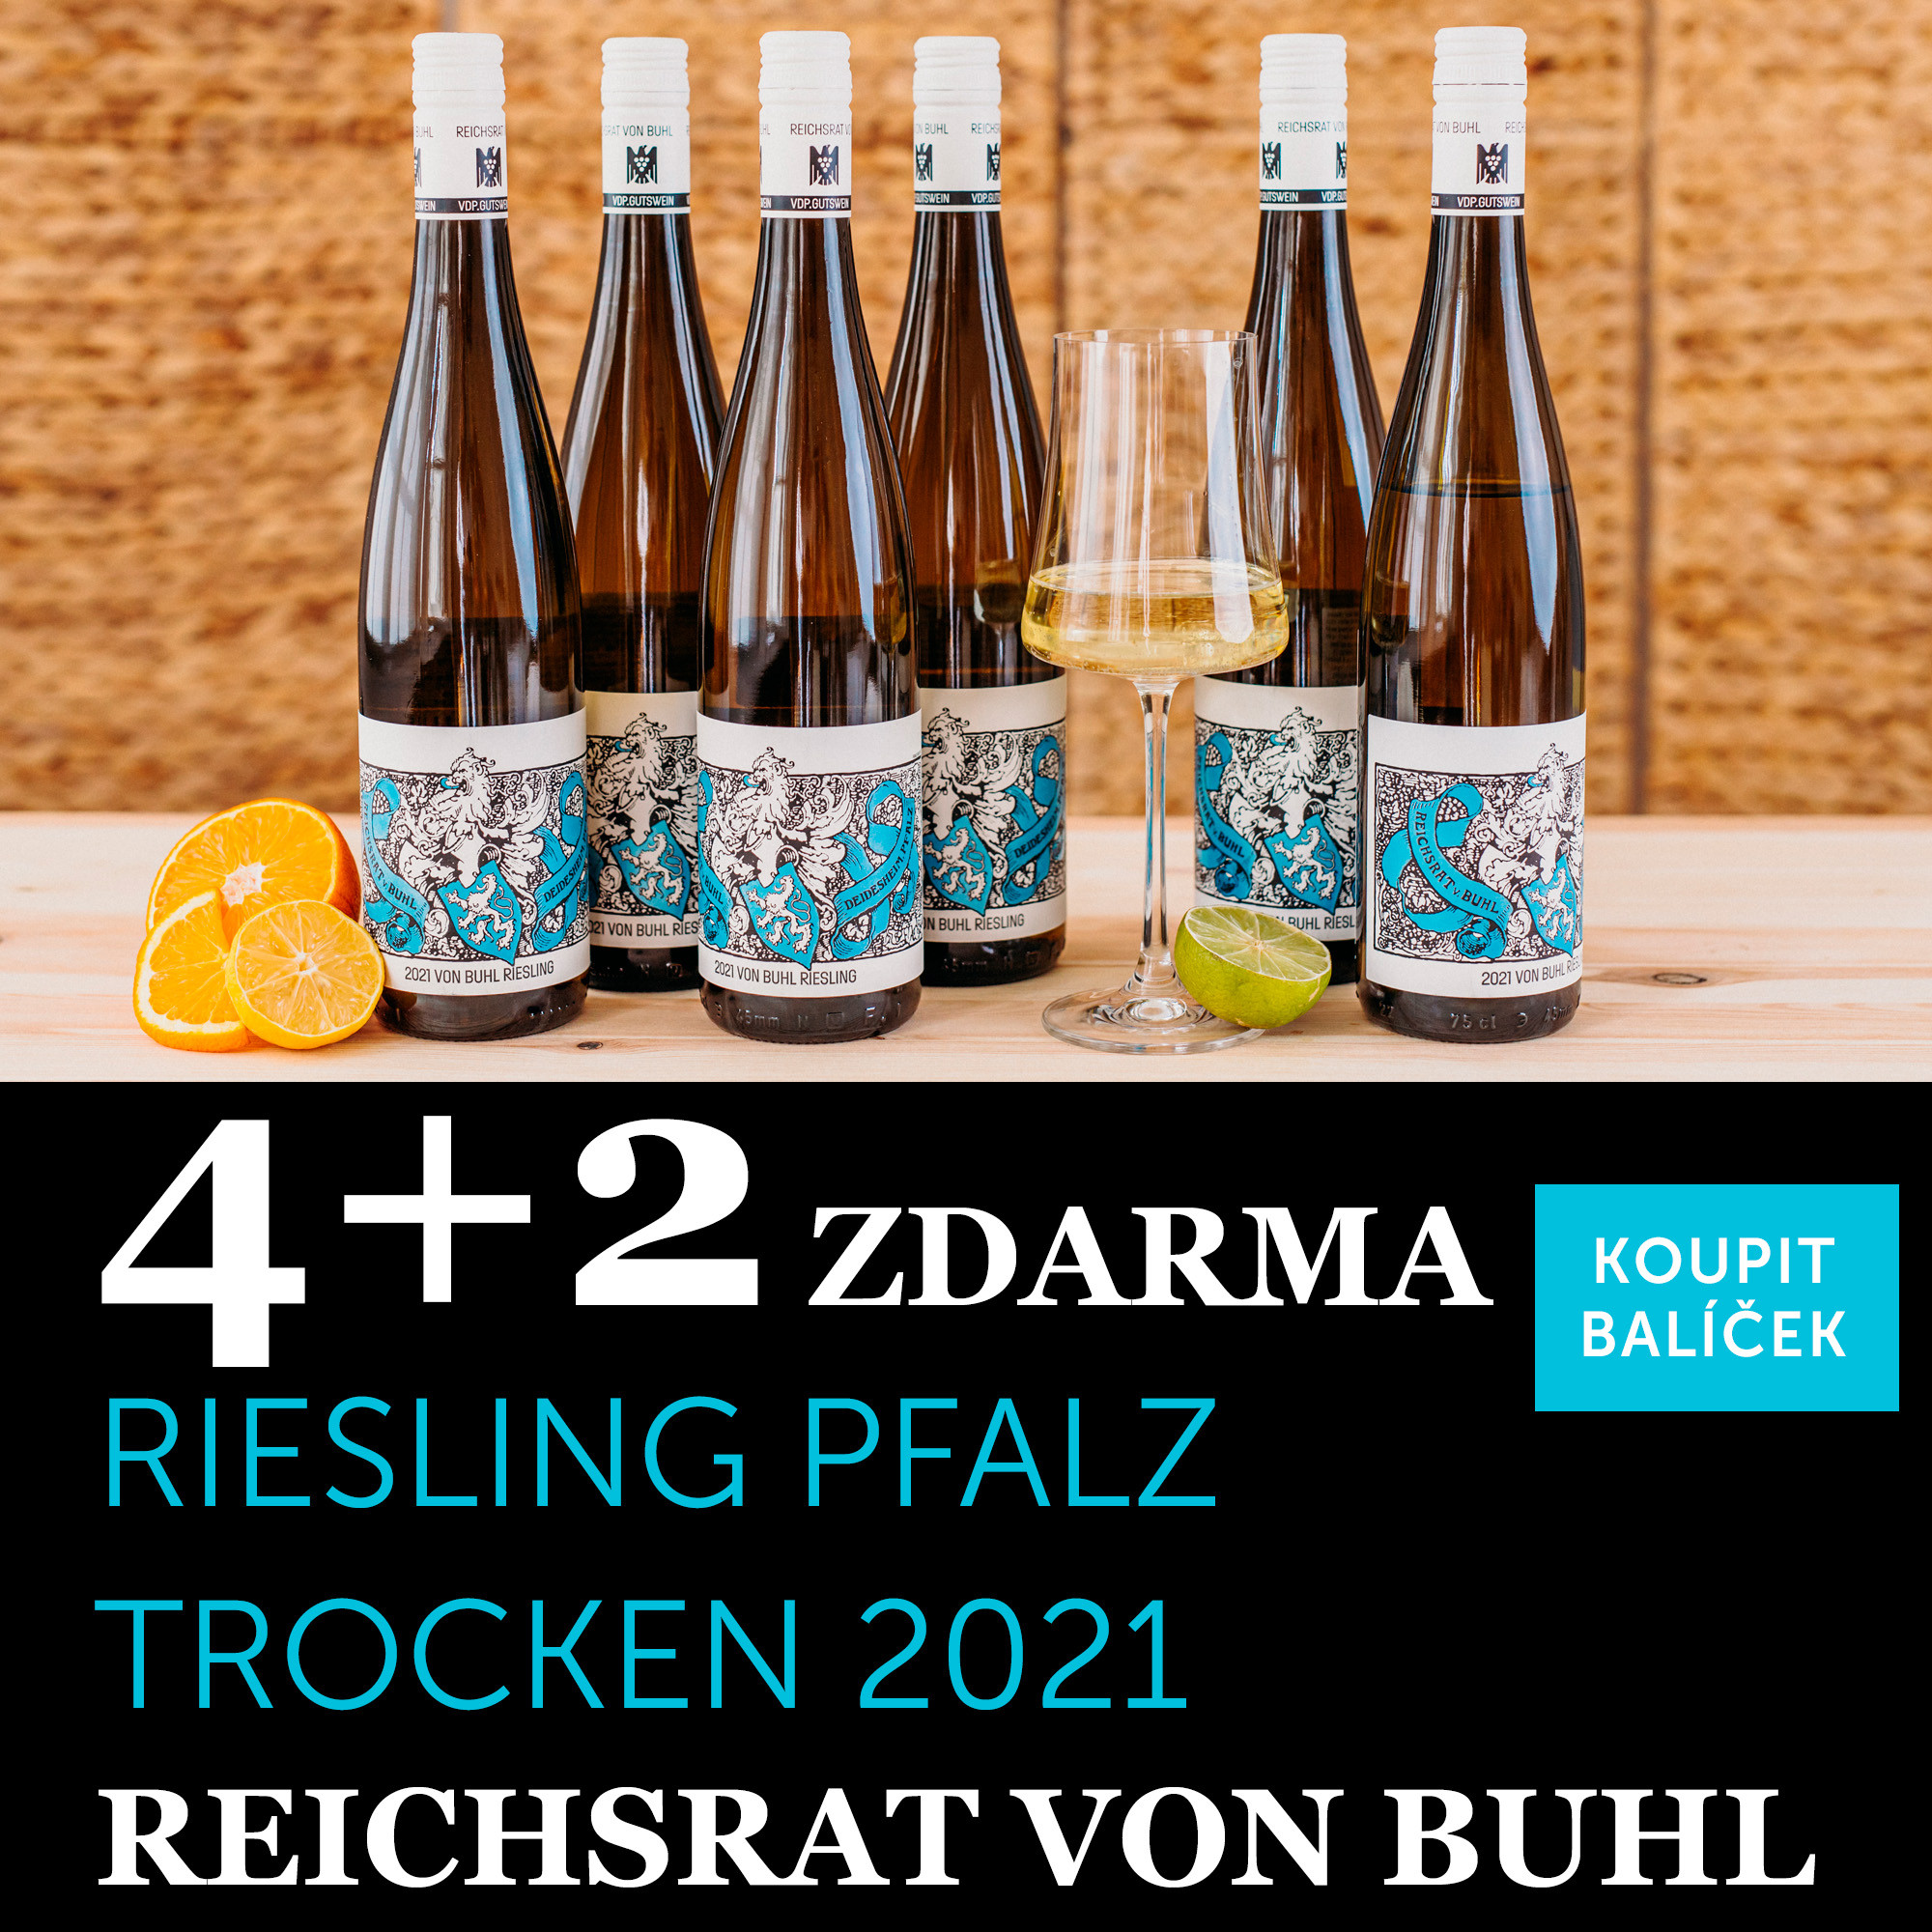 Víno měsíce května - Von Buhl Riesling Pfalz trocken 2021 4+2 zdarma